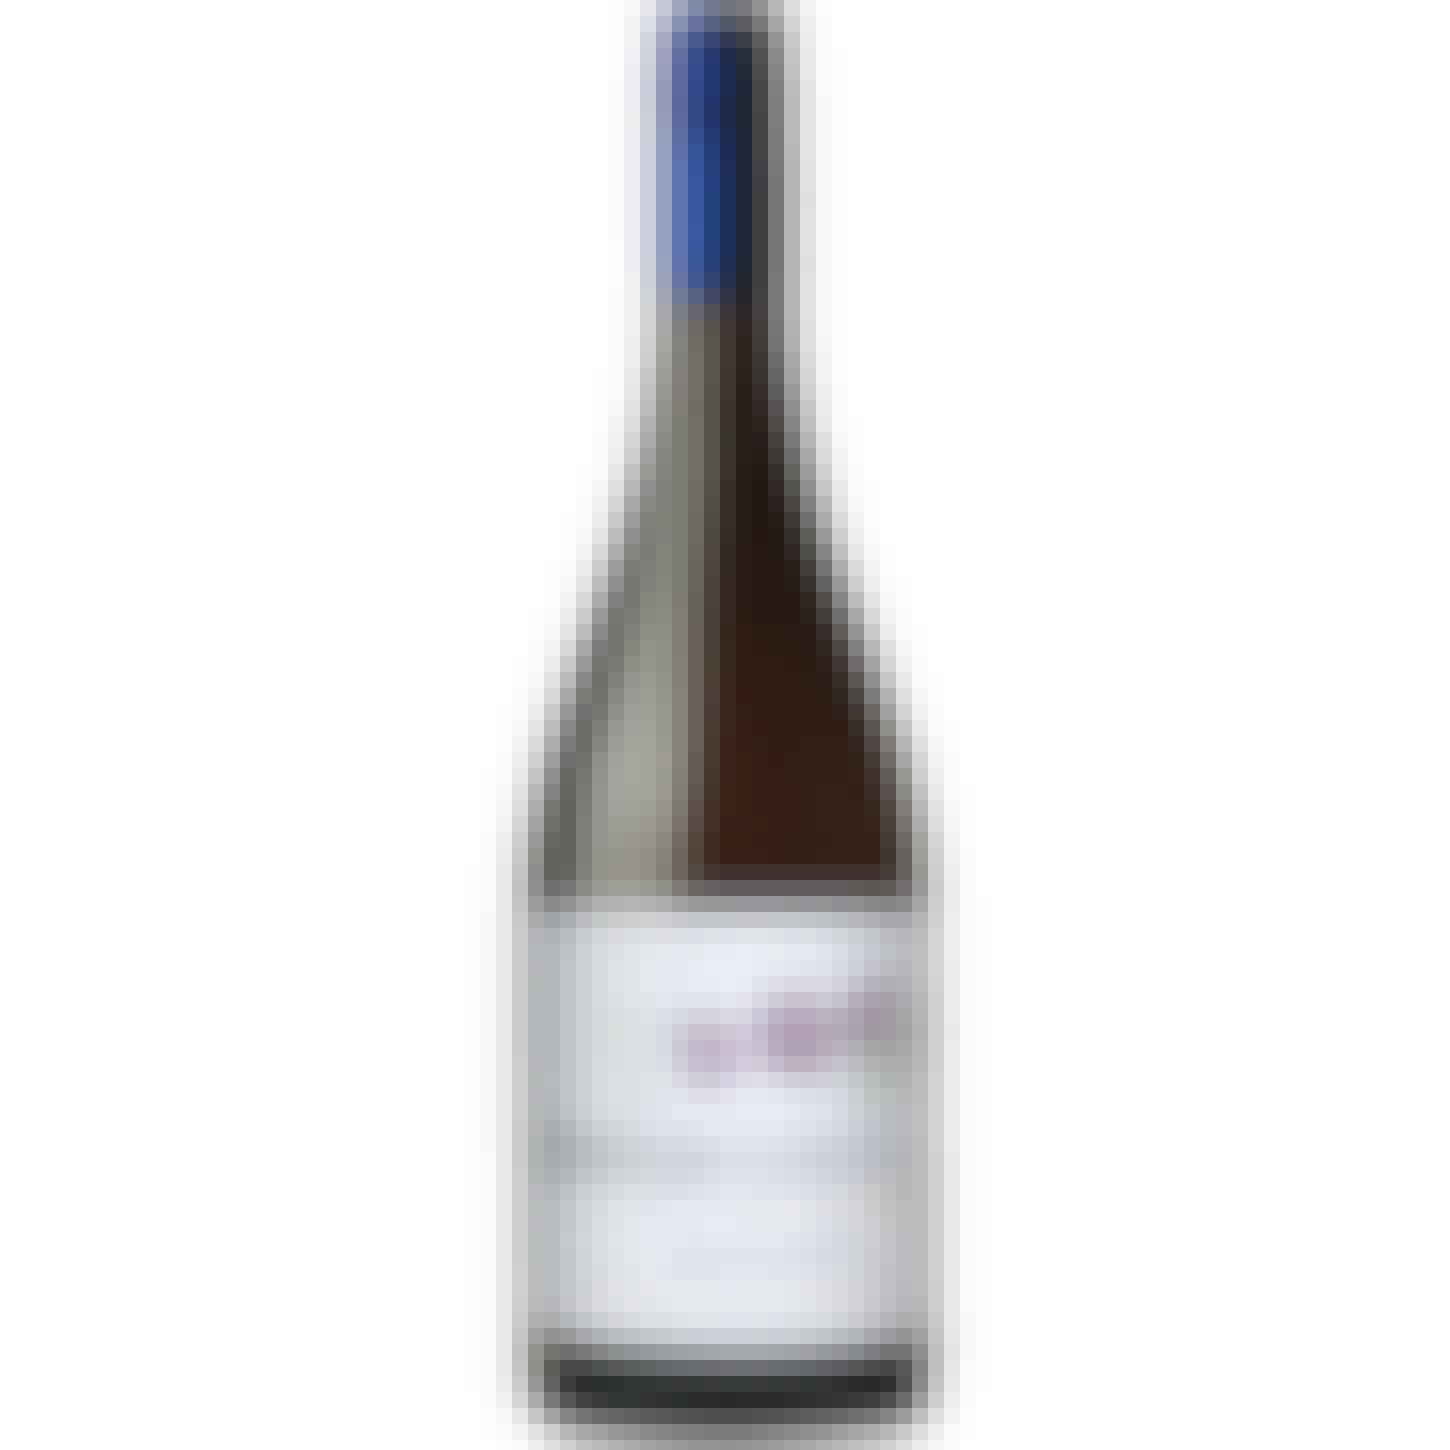 Koyle Costa La Flor Sauvignon Blanc 2020